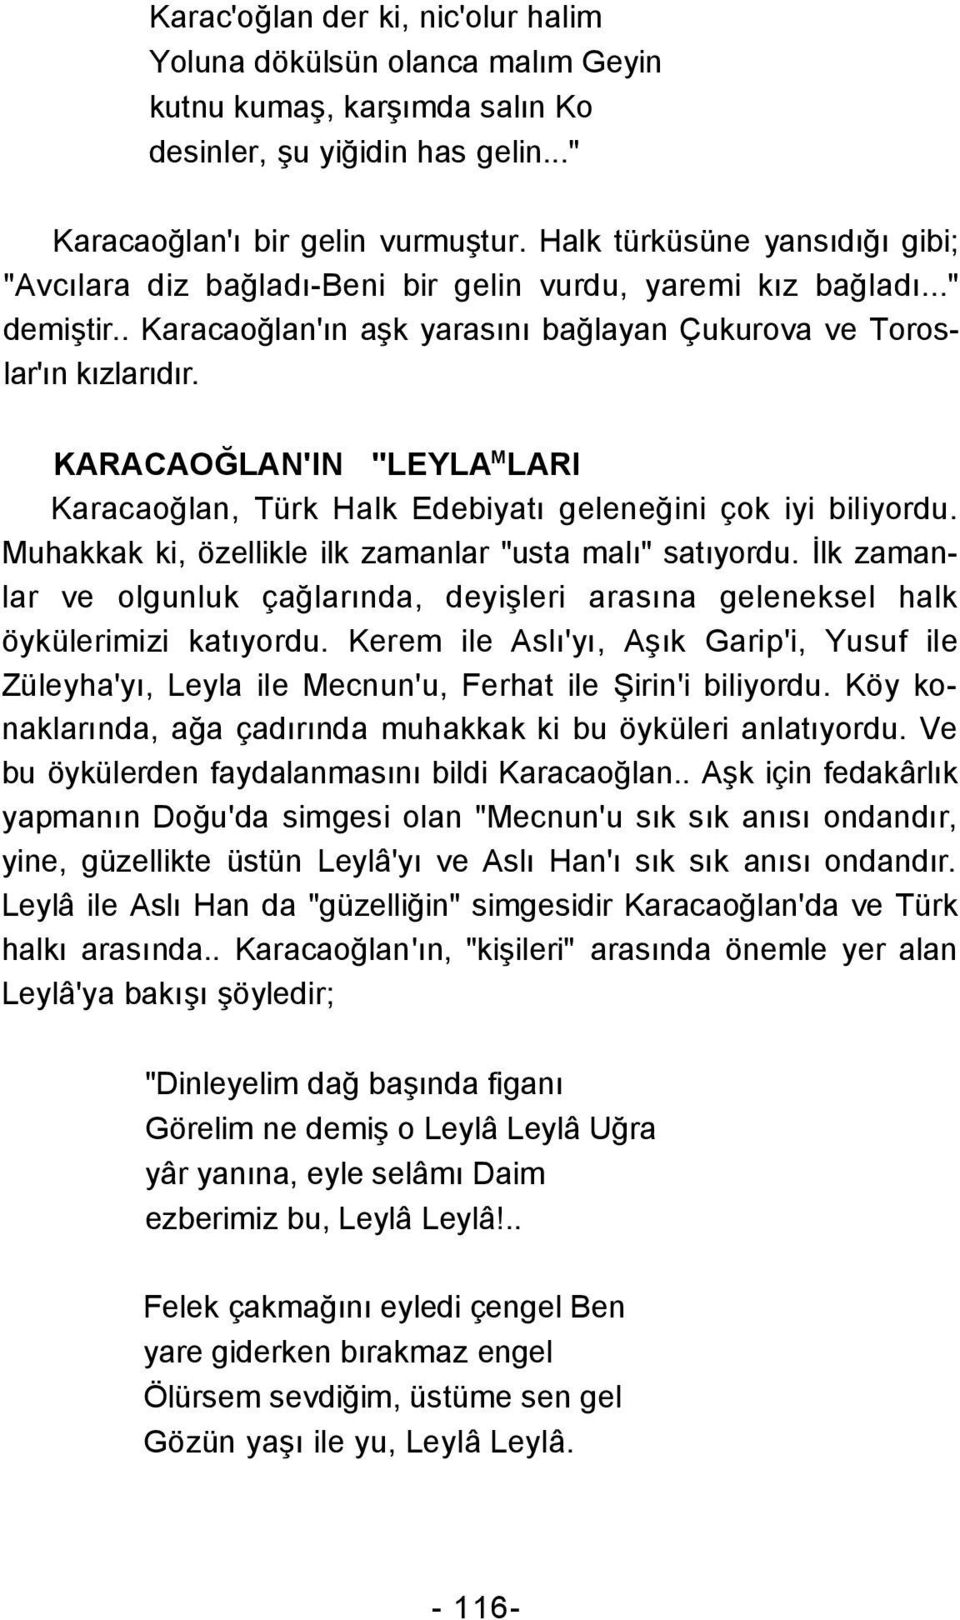 KARACAOĞLAN'IN "LEYLA M LARI Karacaoğlan, Türk Halk Edebiyatı geleneğini çok iyi biliyordu. Muhakkak ki, özellikle ilk zamanlar "usta malı" satıyordu.